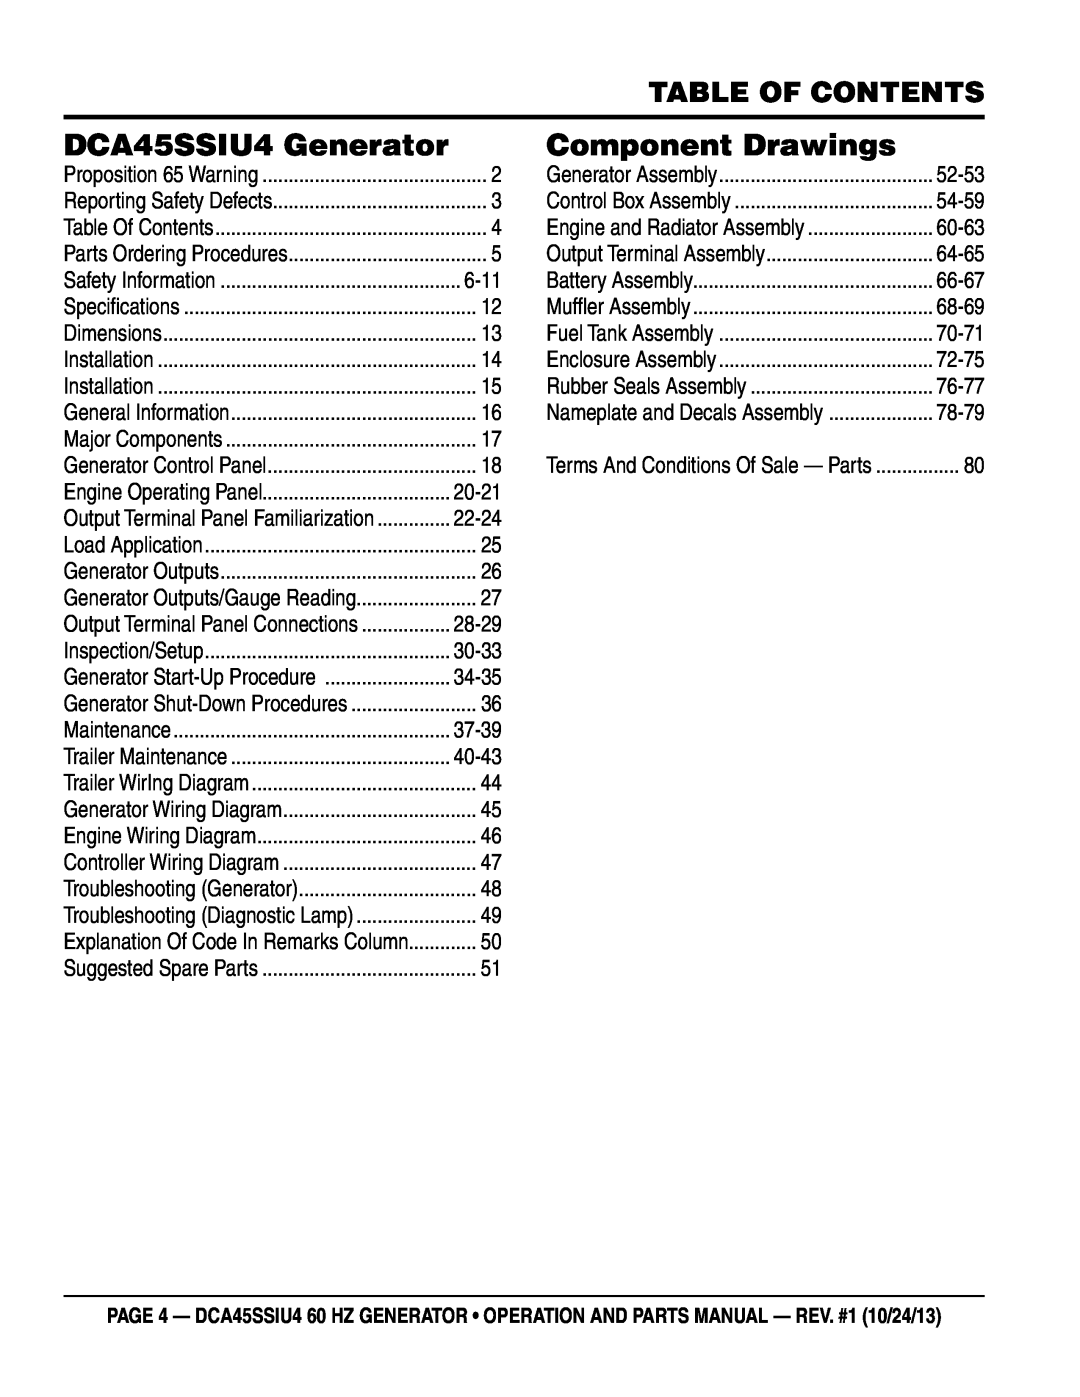 Multiquip dca45ssiu4 manual Table of Contents, DCA45SSIU4 Generator, Component Drawings, 6-11 